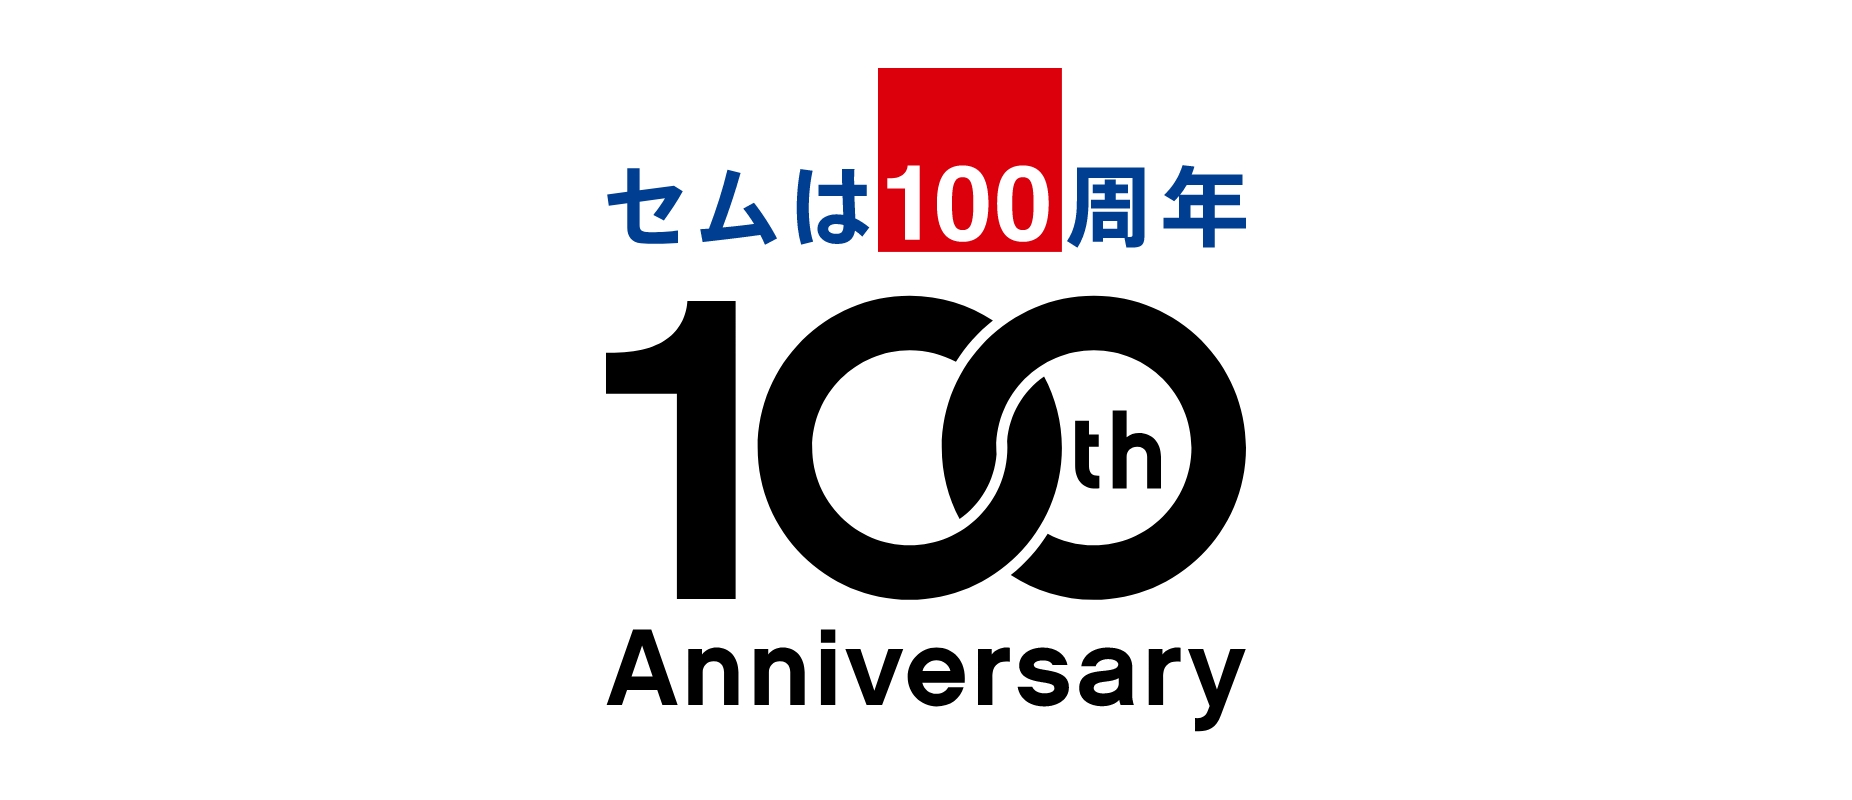 2022年 セムは100周年 100th Anniversary